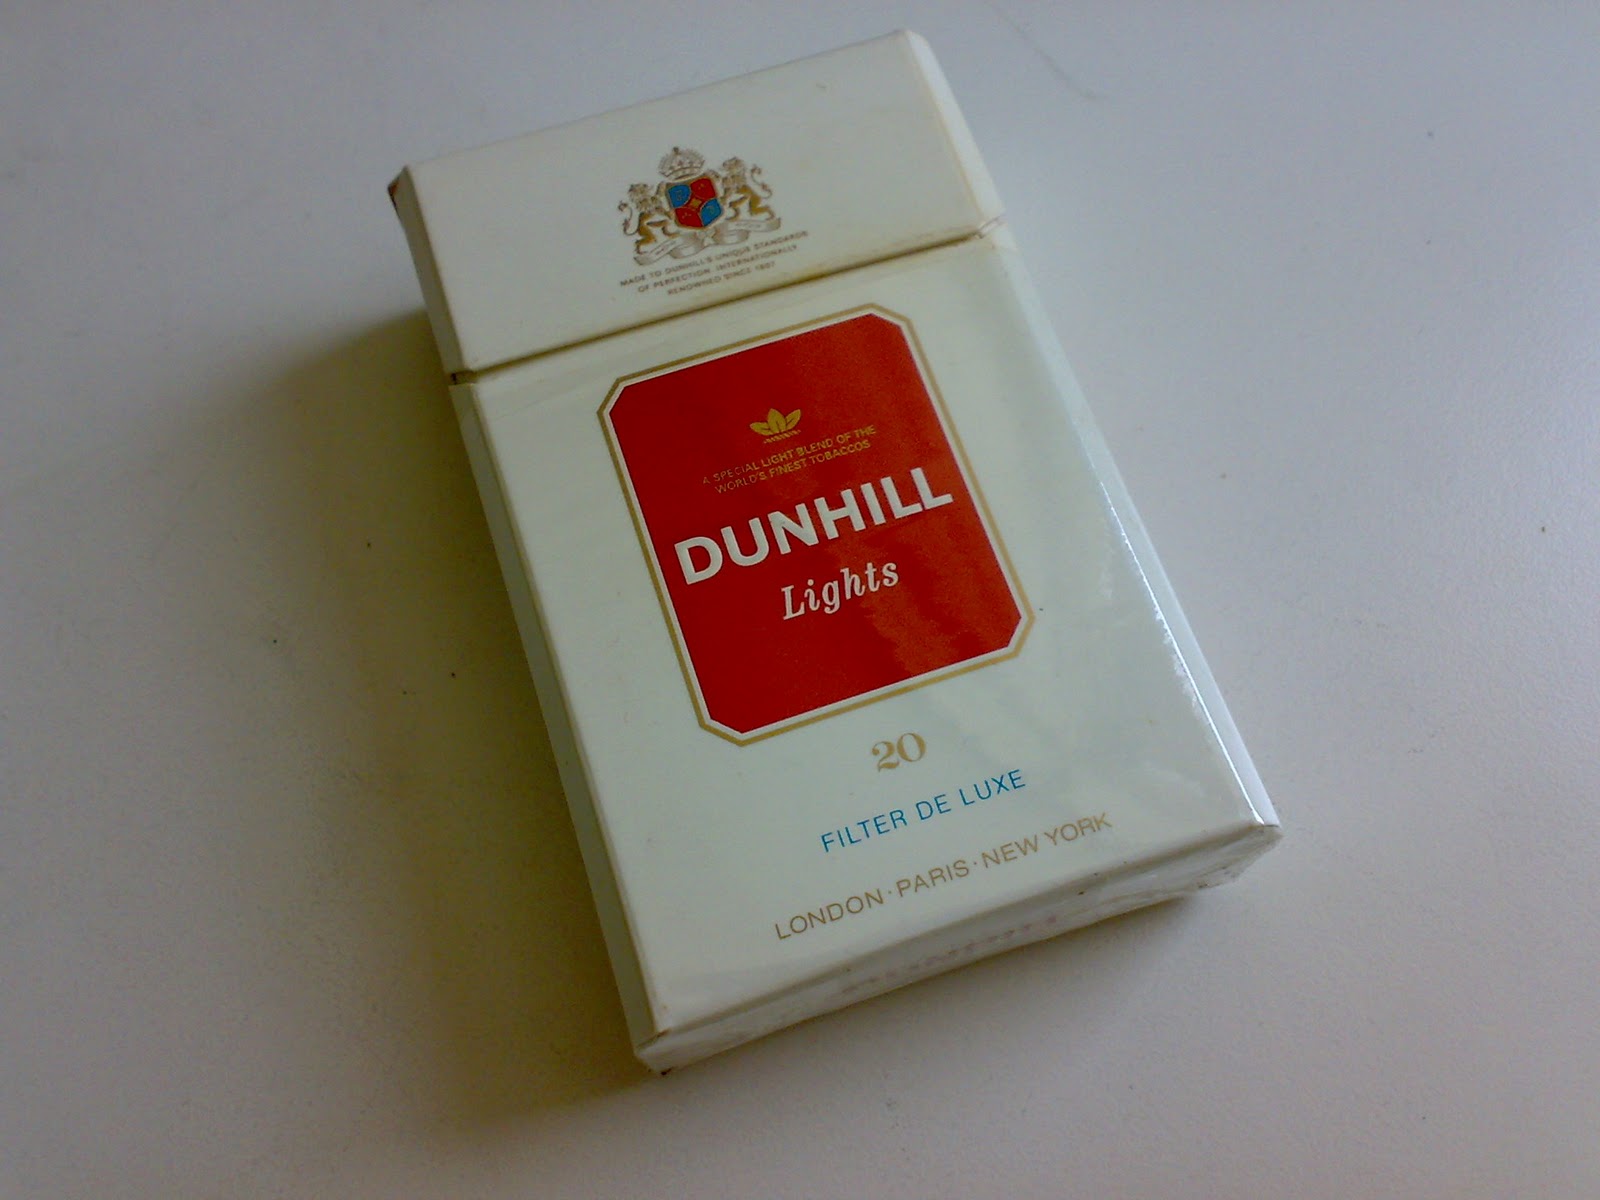 Dunhill Smoking | lupon.gov.ph